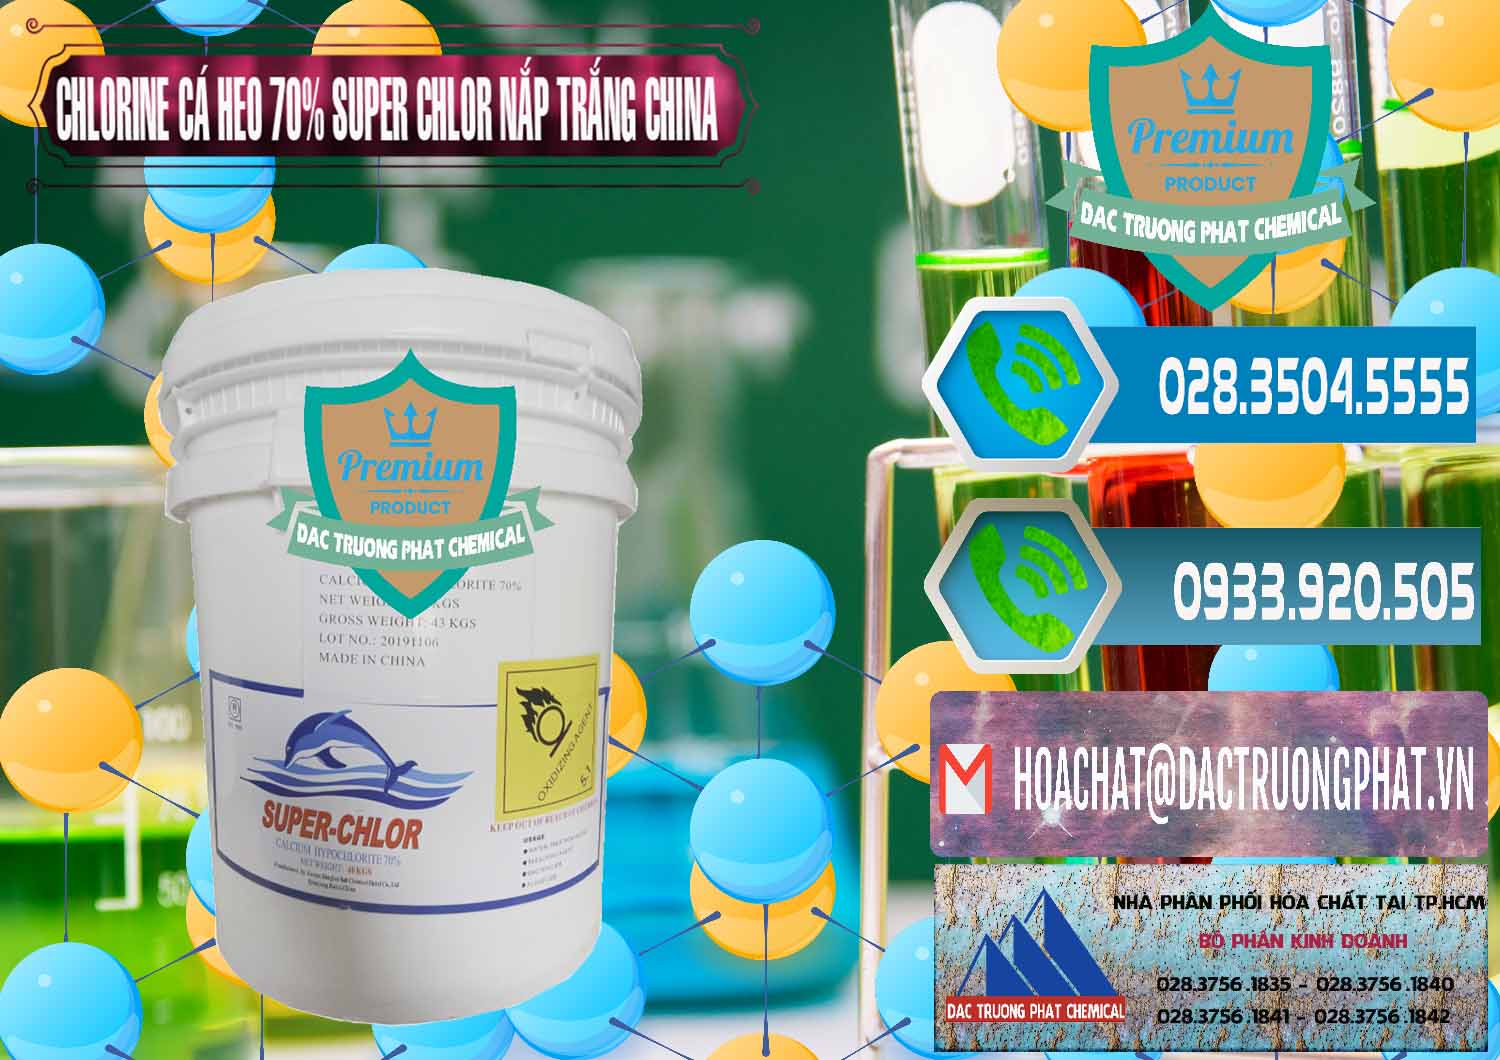 Nơi chuyên phân phối và bán Clorin - Chlorine Cá Heo 70% Super Chlor Nắp Trắng Trung Quốc China - 0240 - Công ty phân phối - nhập khẩu hóa chất tại TP.HCM - congtyhoachat.net